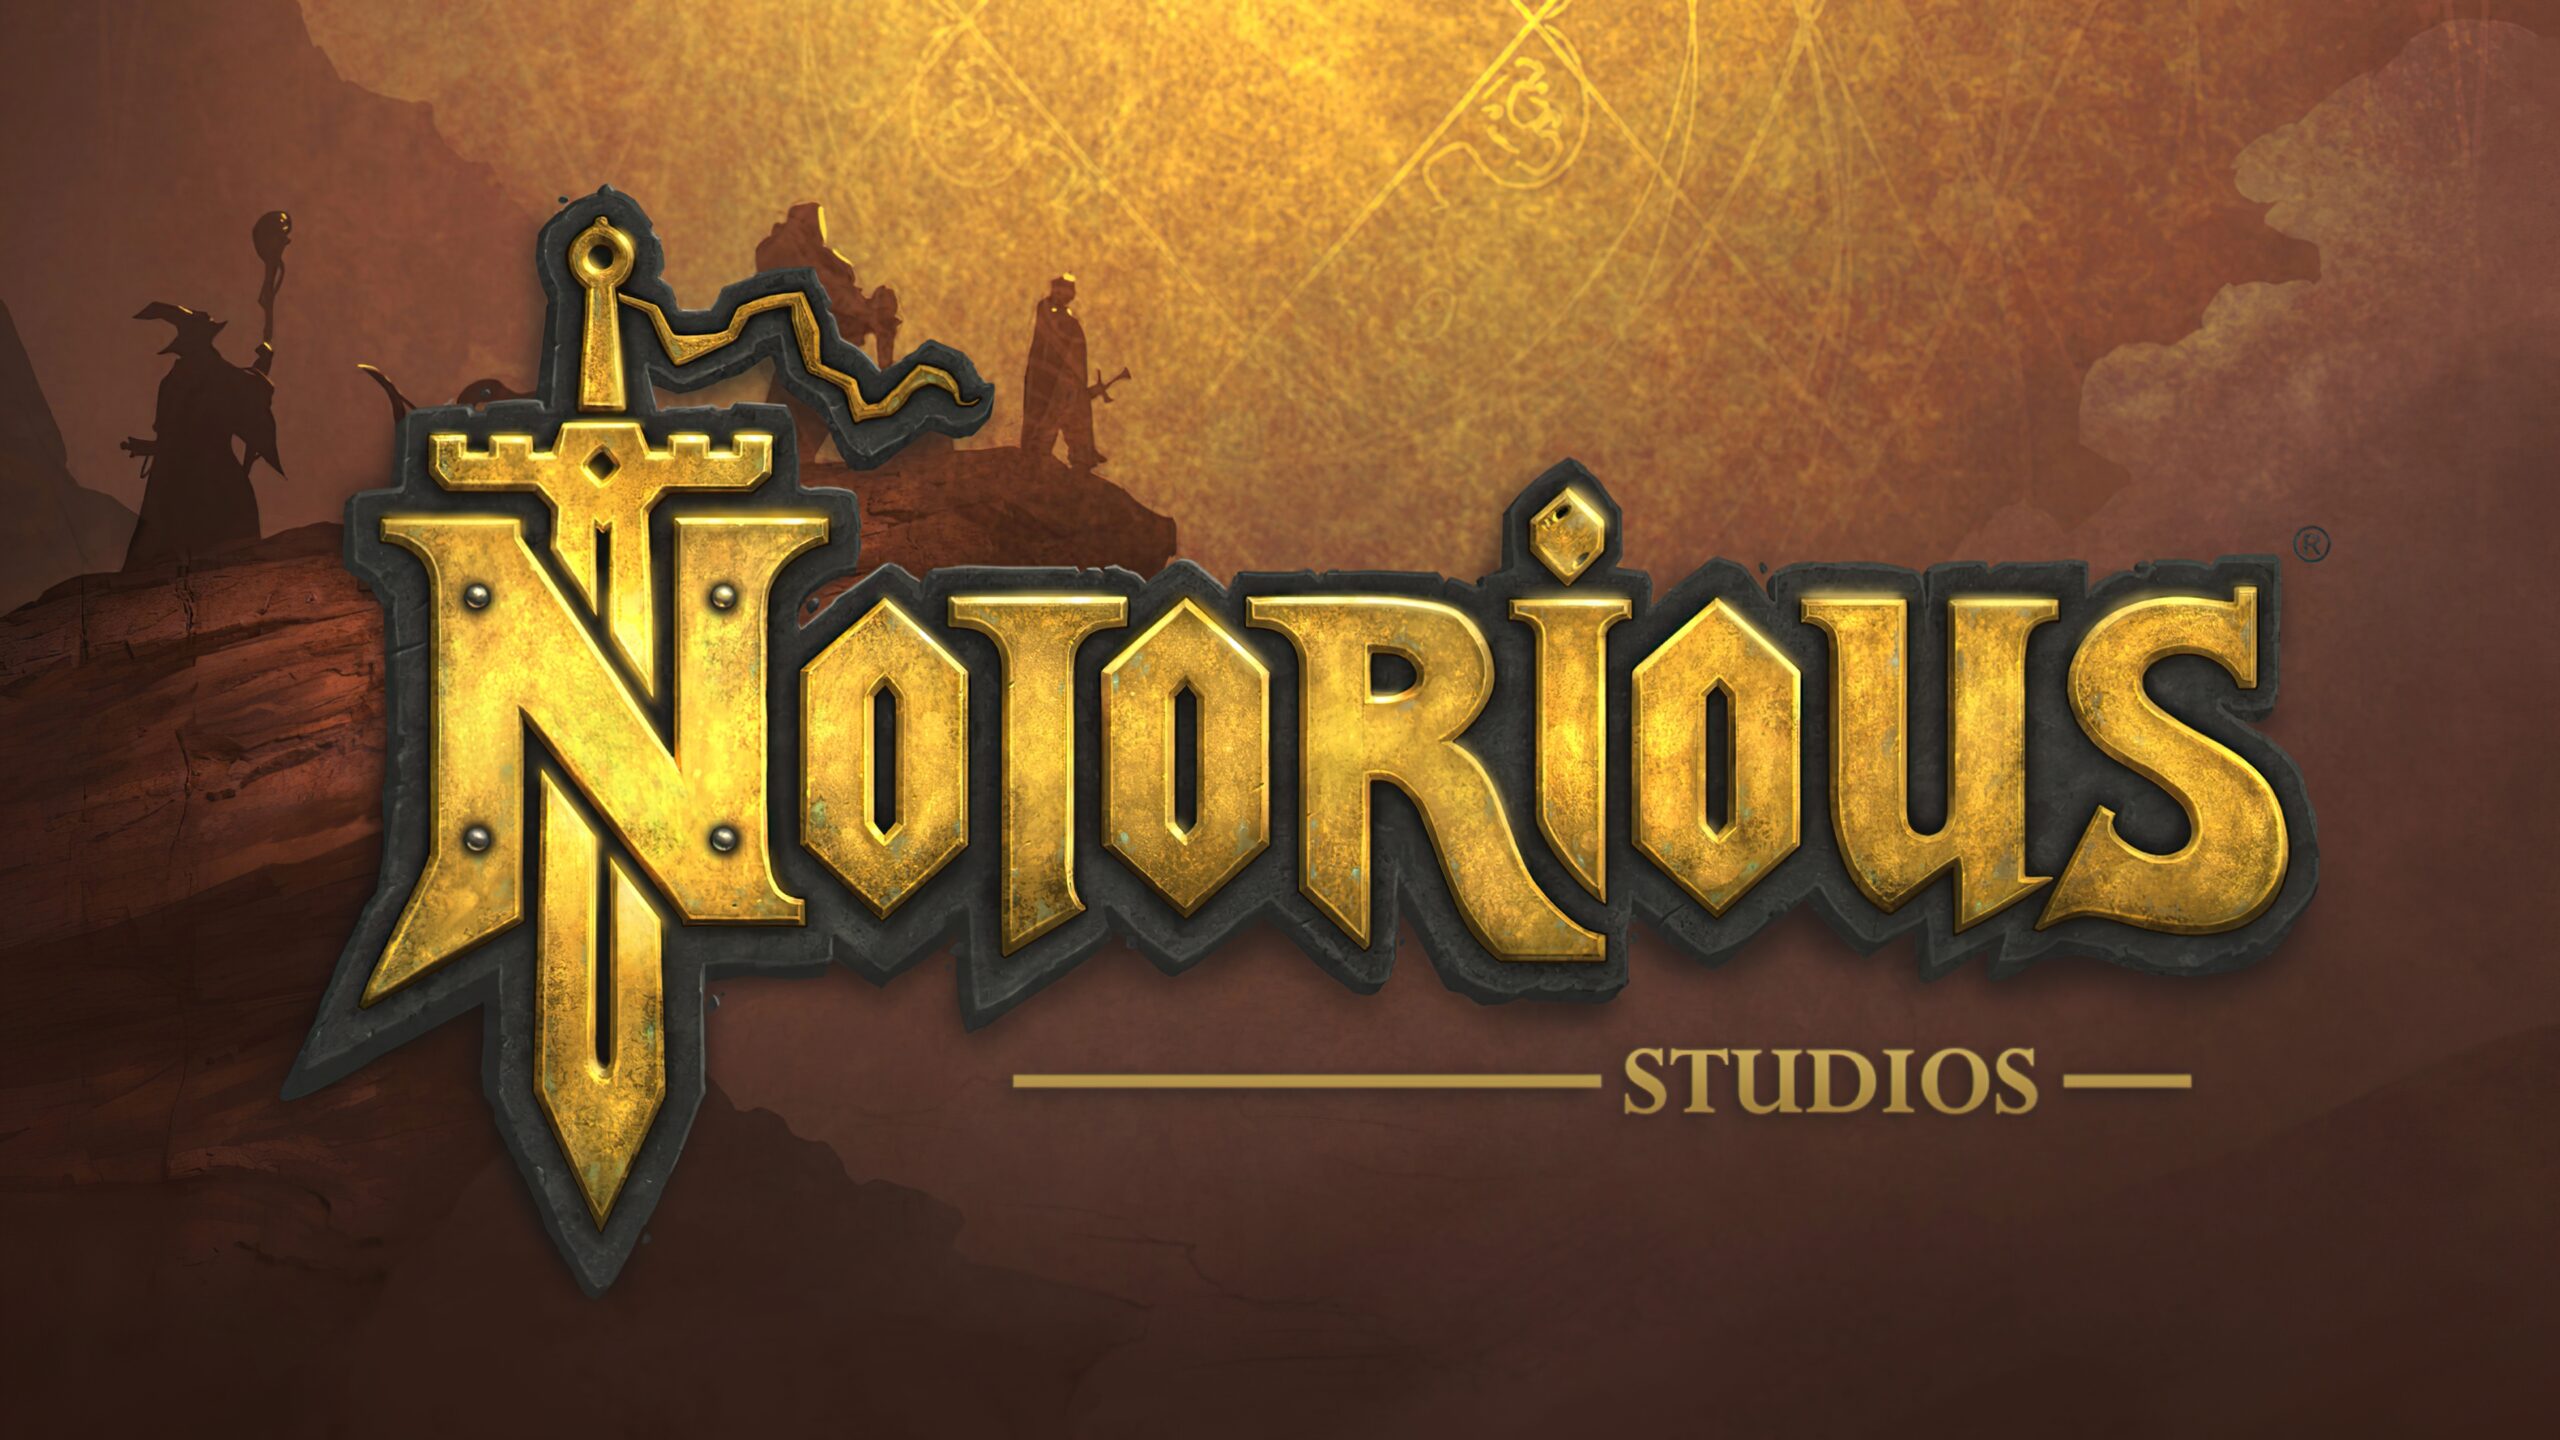 Notorious Studios, założone przez byłych twórców WoW, chce zbudować kolejny rozdział Core Fantasy RPG